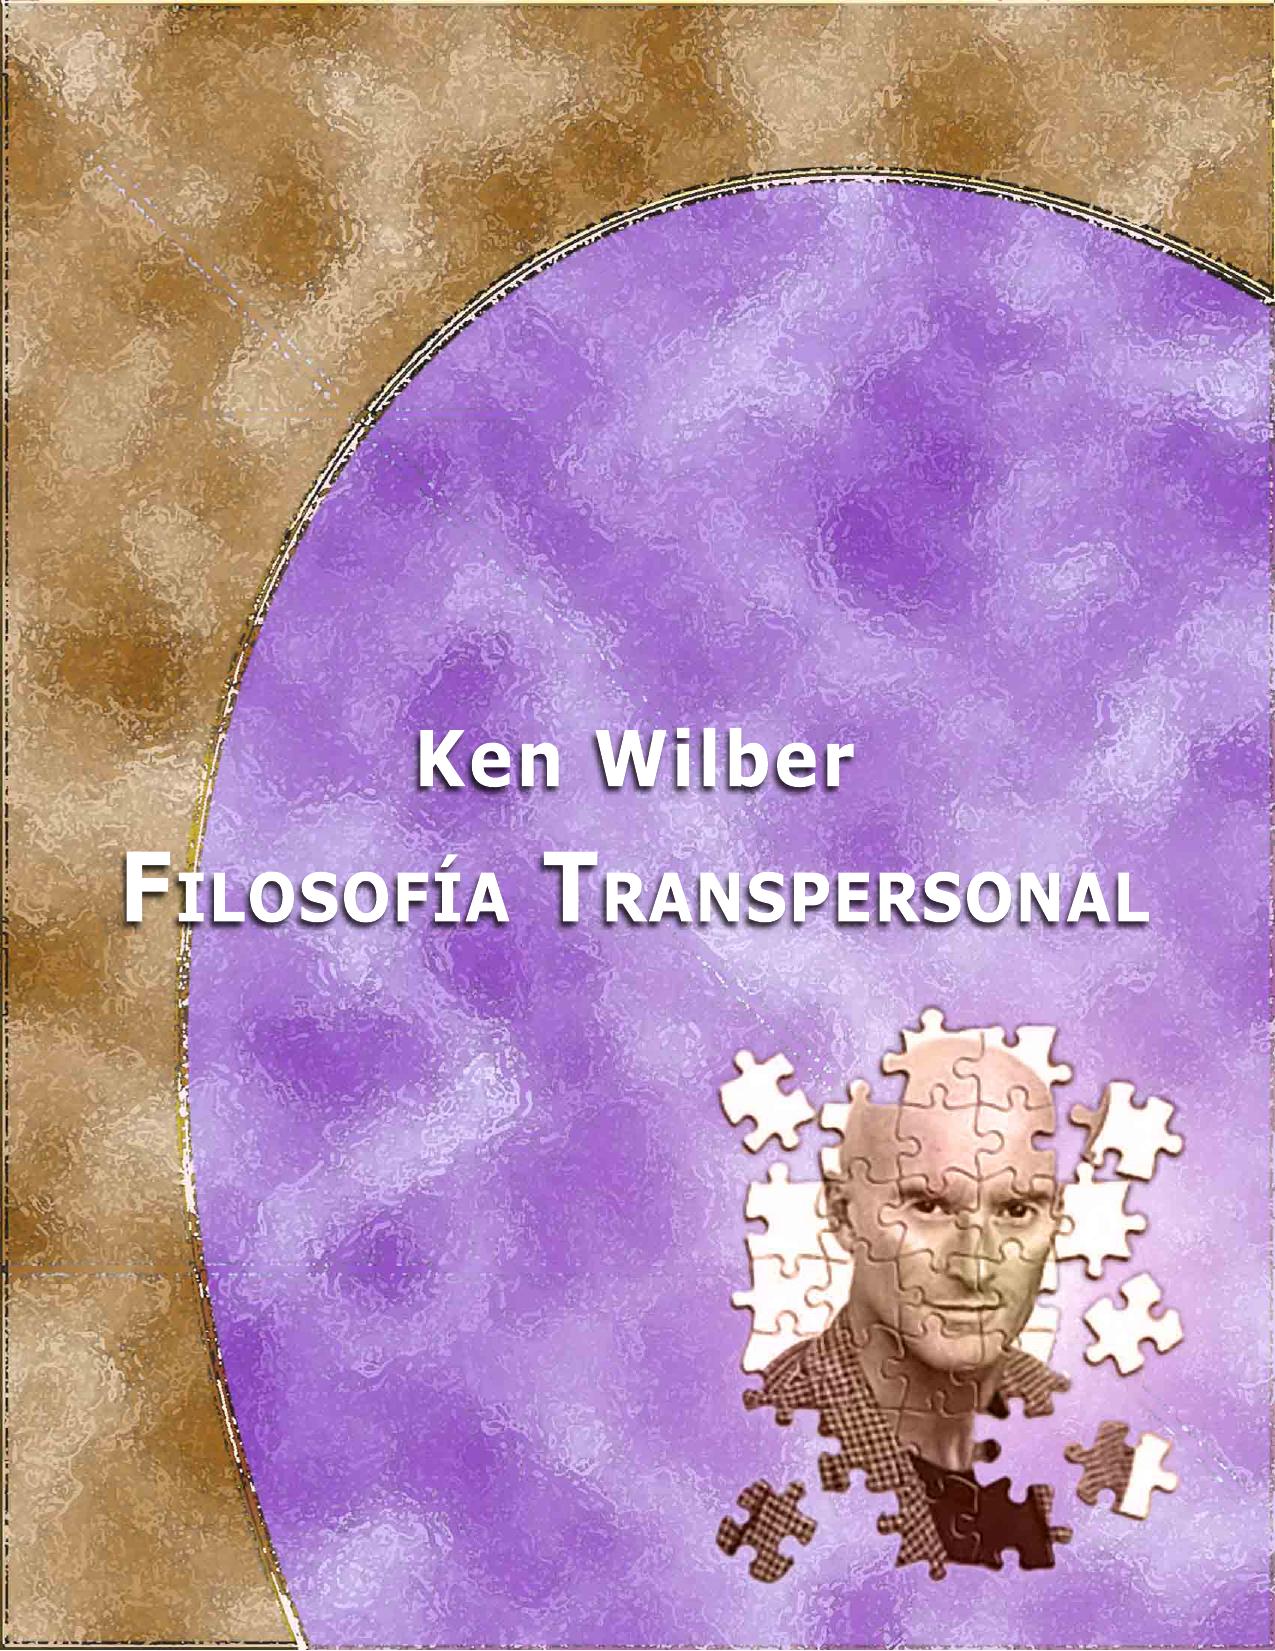 Ken Wilber - Filasofia Transpersonal